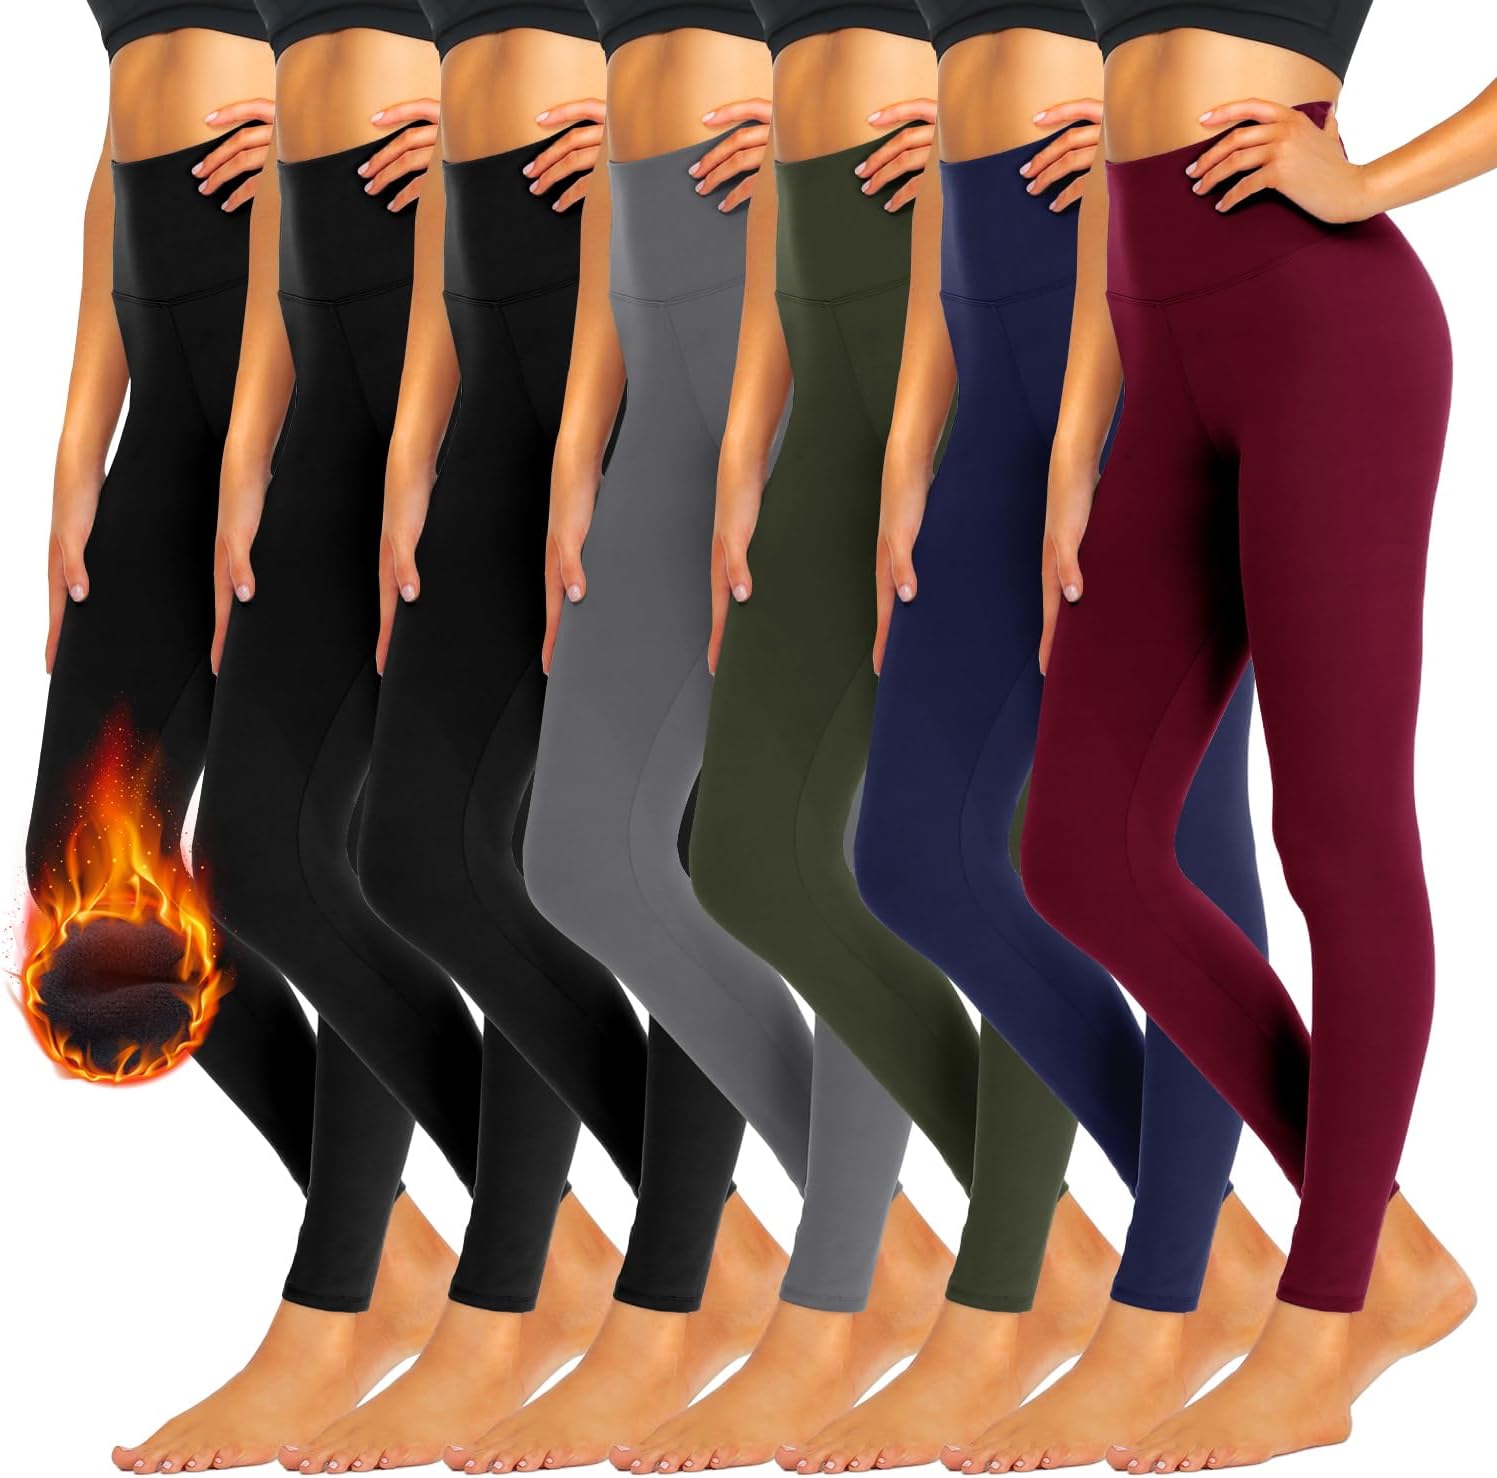 iceROSE 7 Pack Leggings for Women, High Waisted Soft Fleece Lined Leggings Black Yoga Pants for Workout Running Maternity